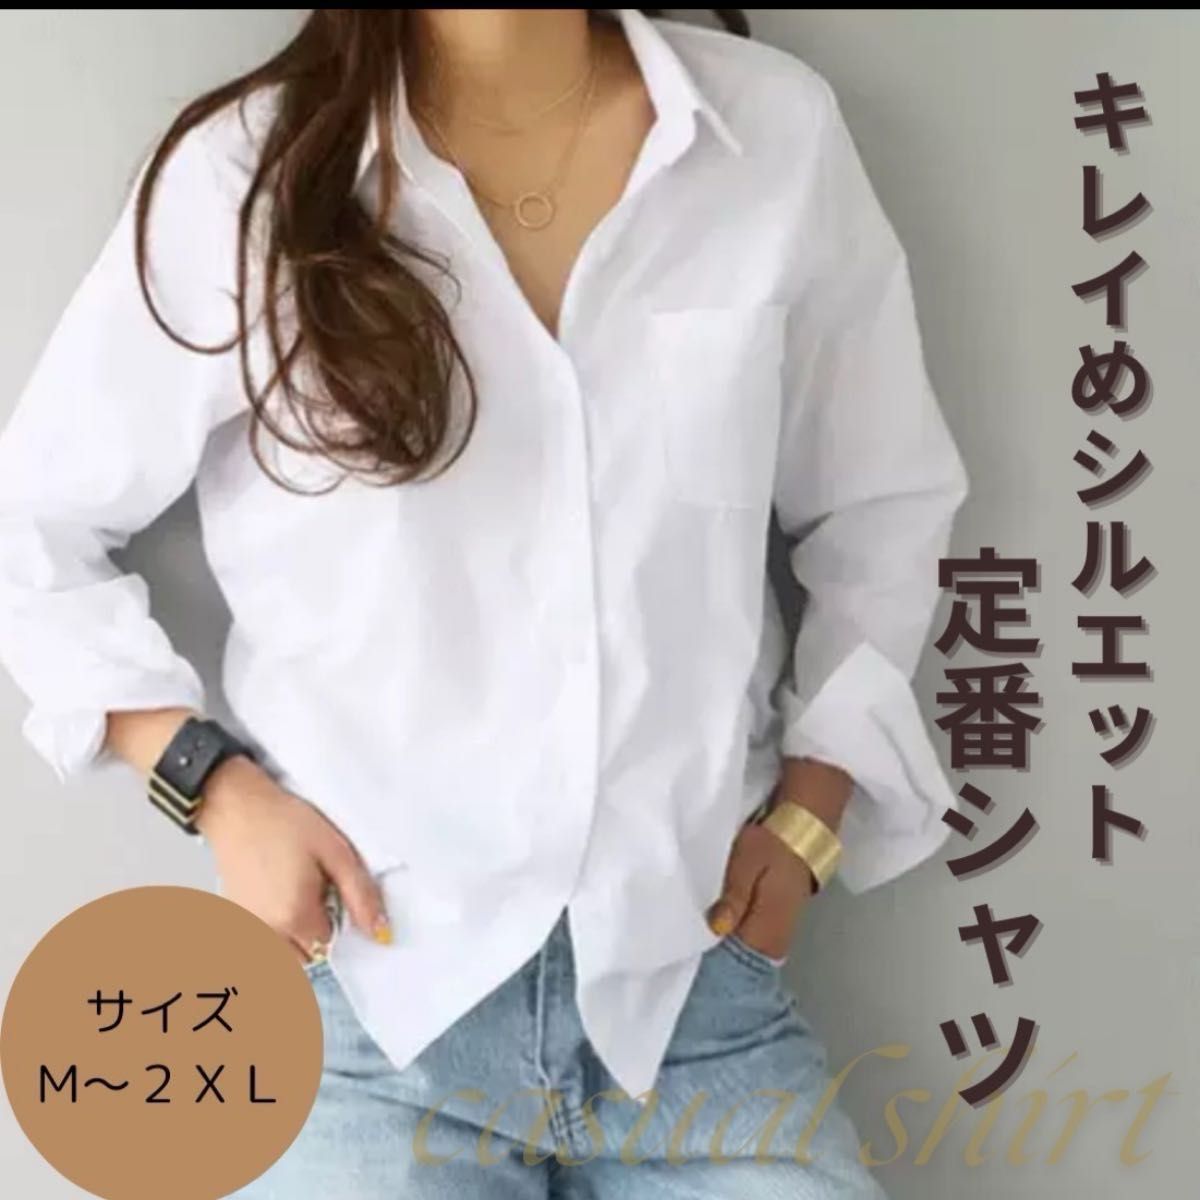 長袖 春 白シャツ 定番 レディース 無地 オーバーサイズ ブラウス 大人気 XL